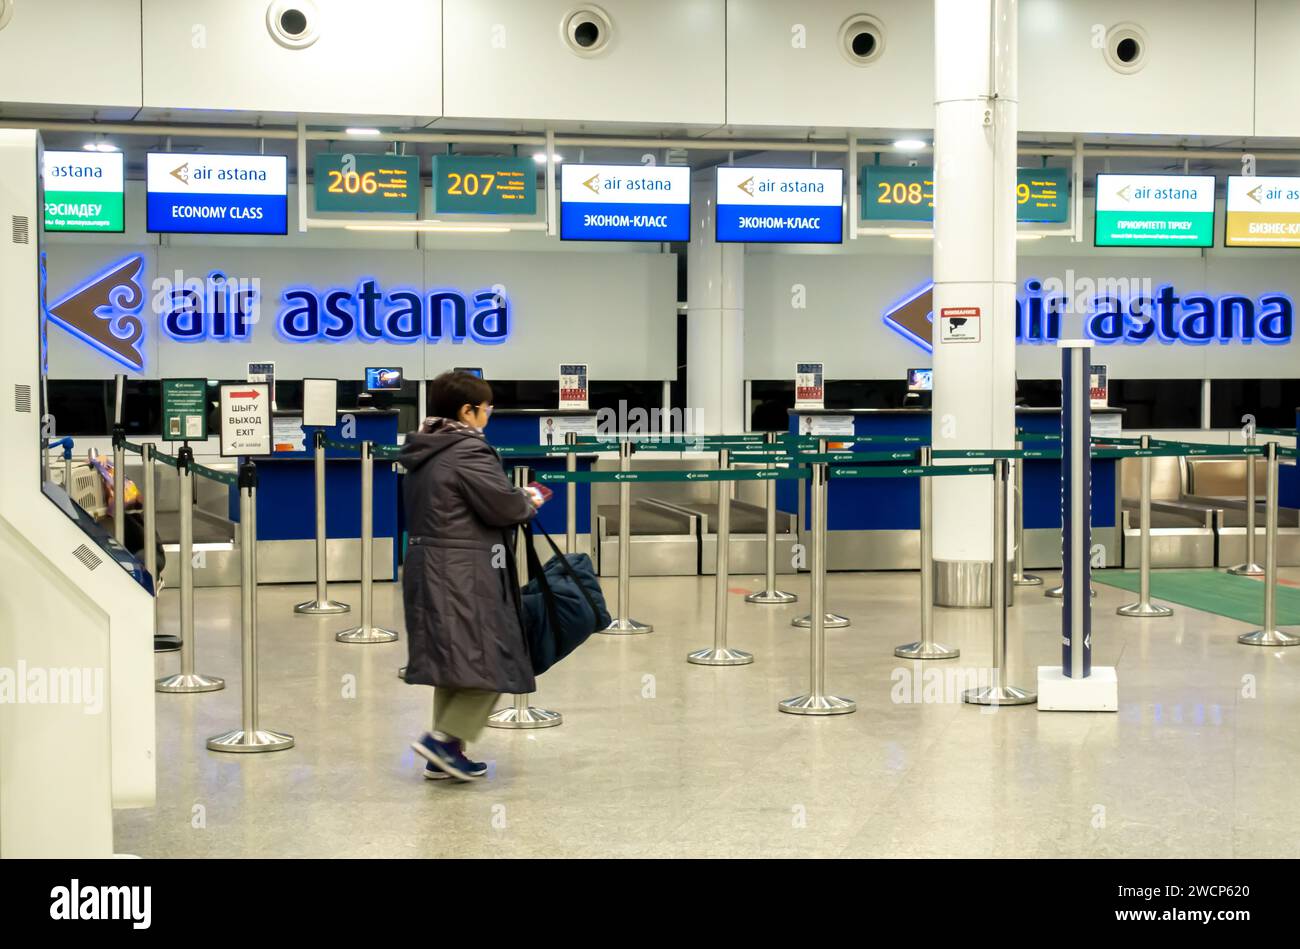 Terminal de départ de l'aéroport d'Astana, zone d'enregistrement. Kazakhstan Banque D'Images